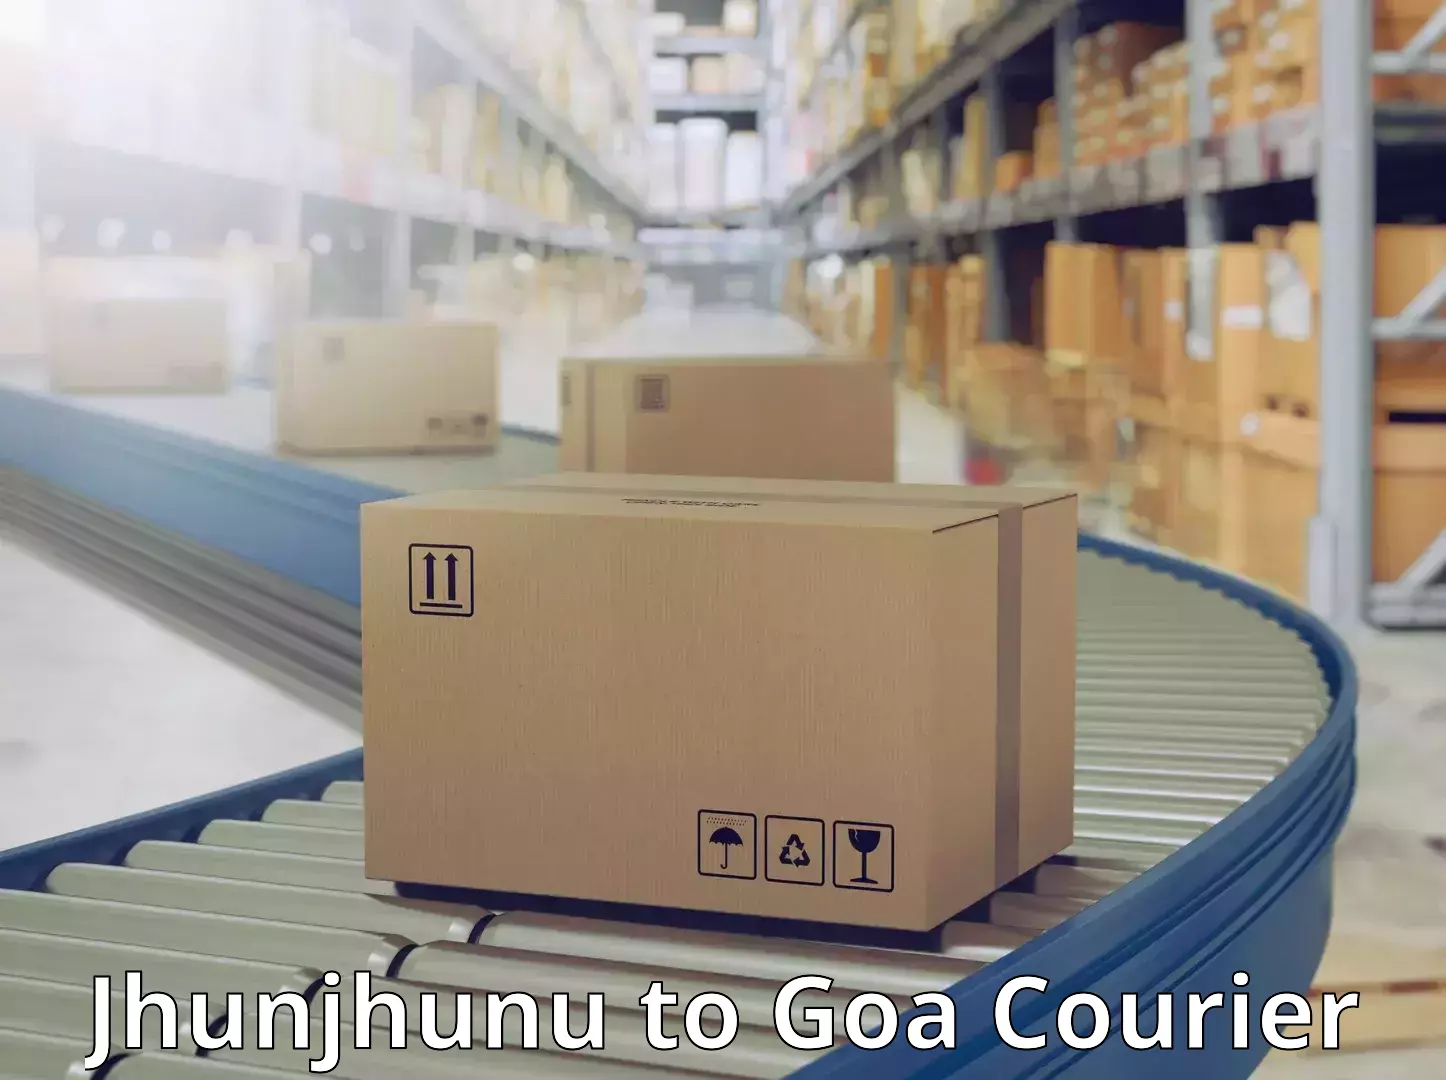 Innovative courier solutions Jhunjhunu to Goa